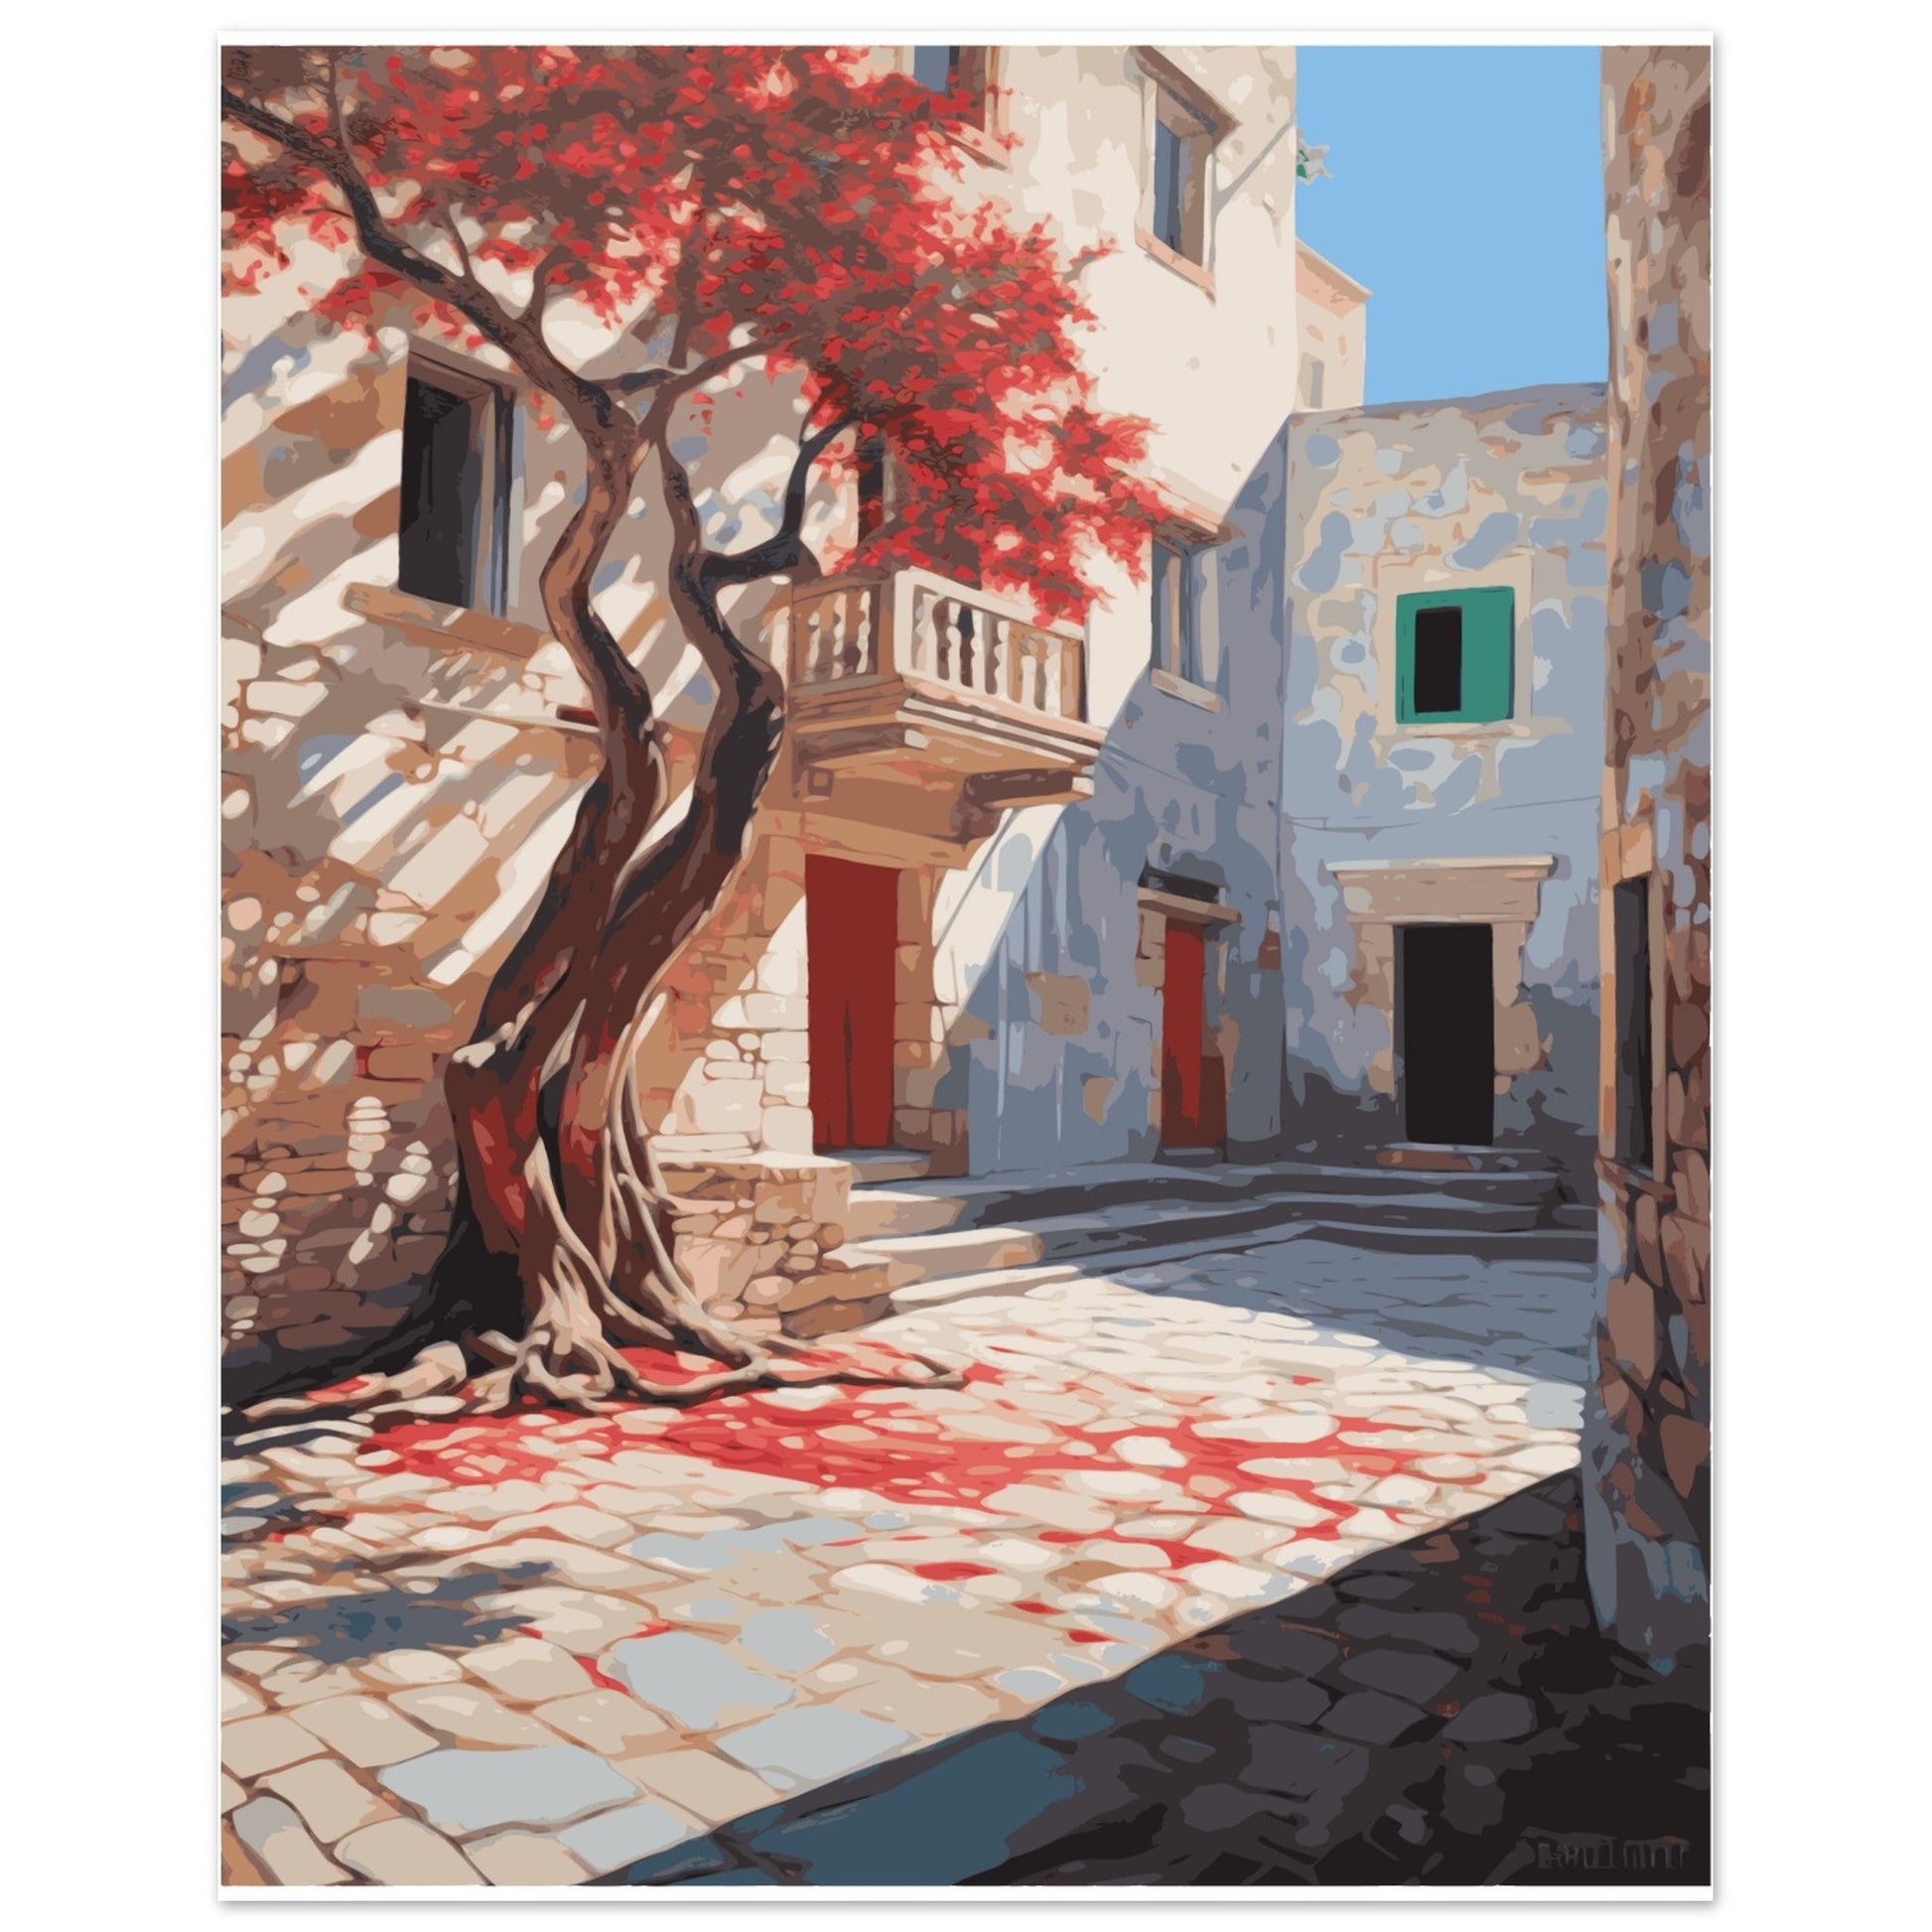 Greece - Flowering Bougainvillea, Mediterranean Village Street, bougainvillea, Greek art print, Travel Poster, #illieeart #